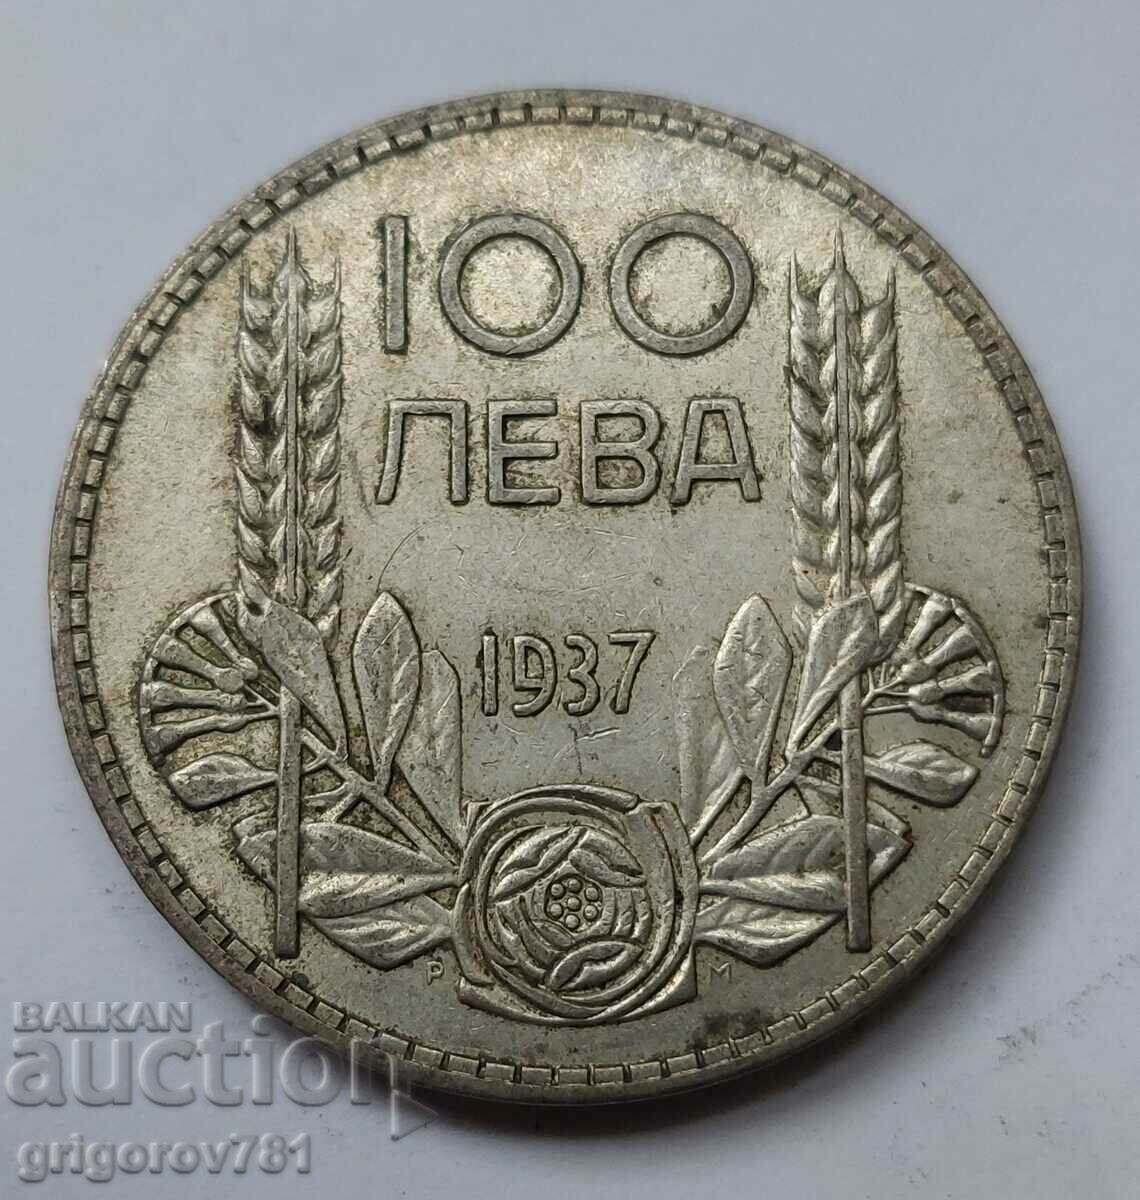 100 leva silver Bulgaria 1937 - silver coin #11